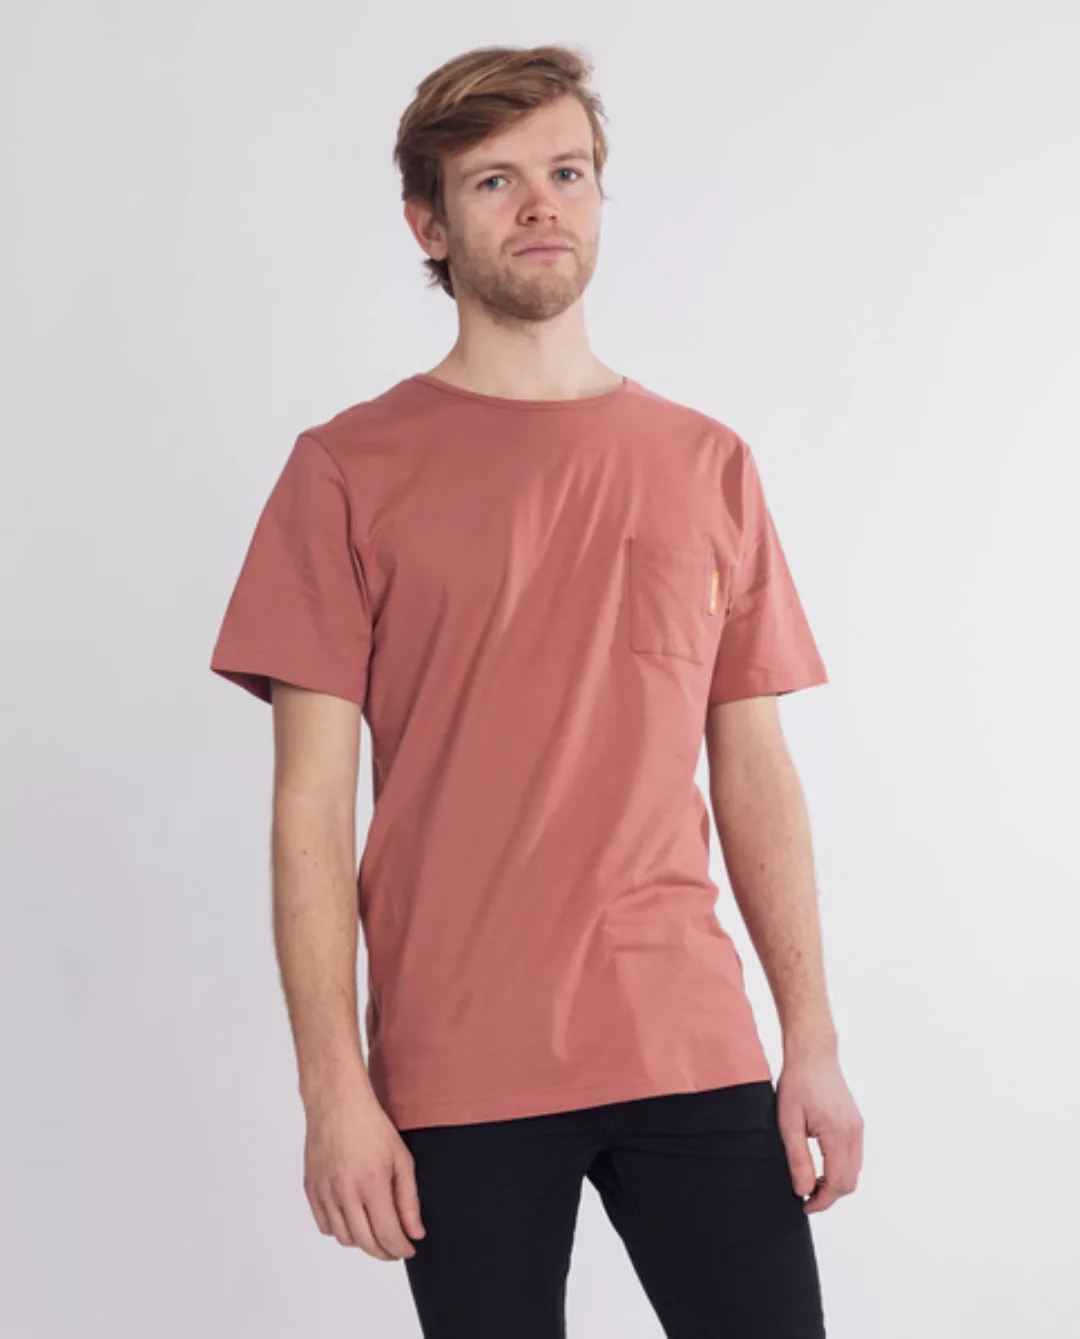 Herren T-shirt Brusttasche | Brutus günstig online kaufen